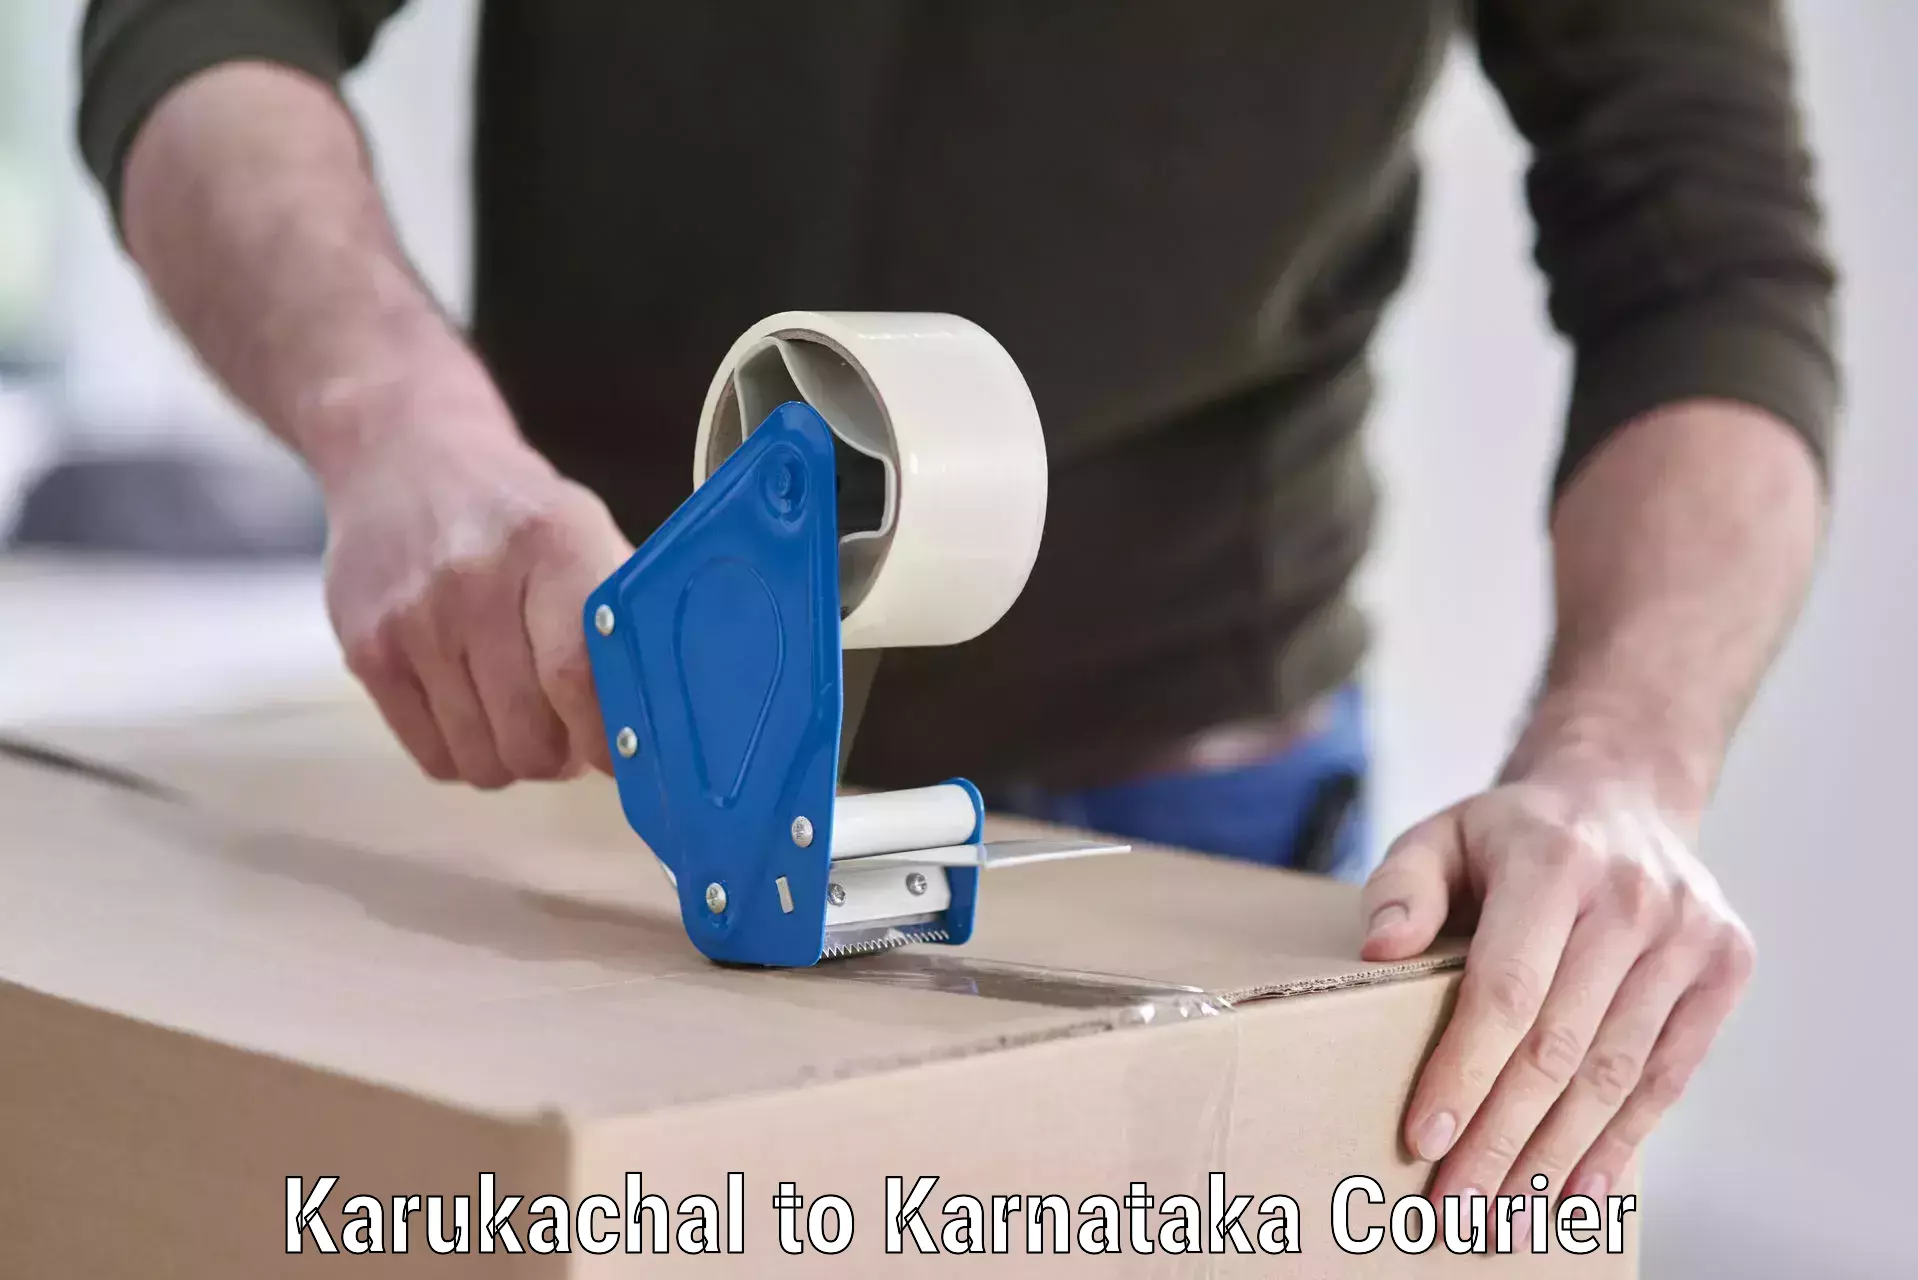 Efficient relocation services Karukachal to Karnataka